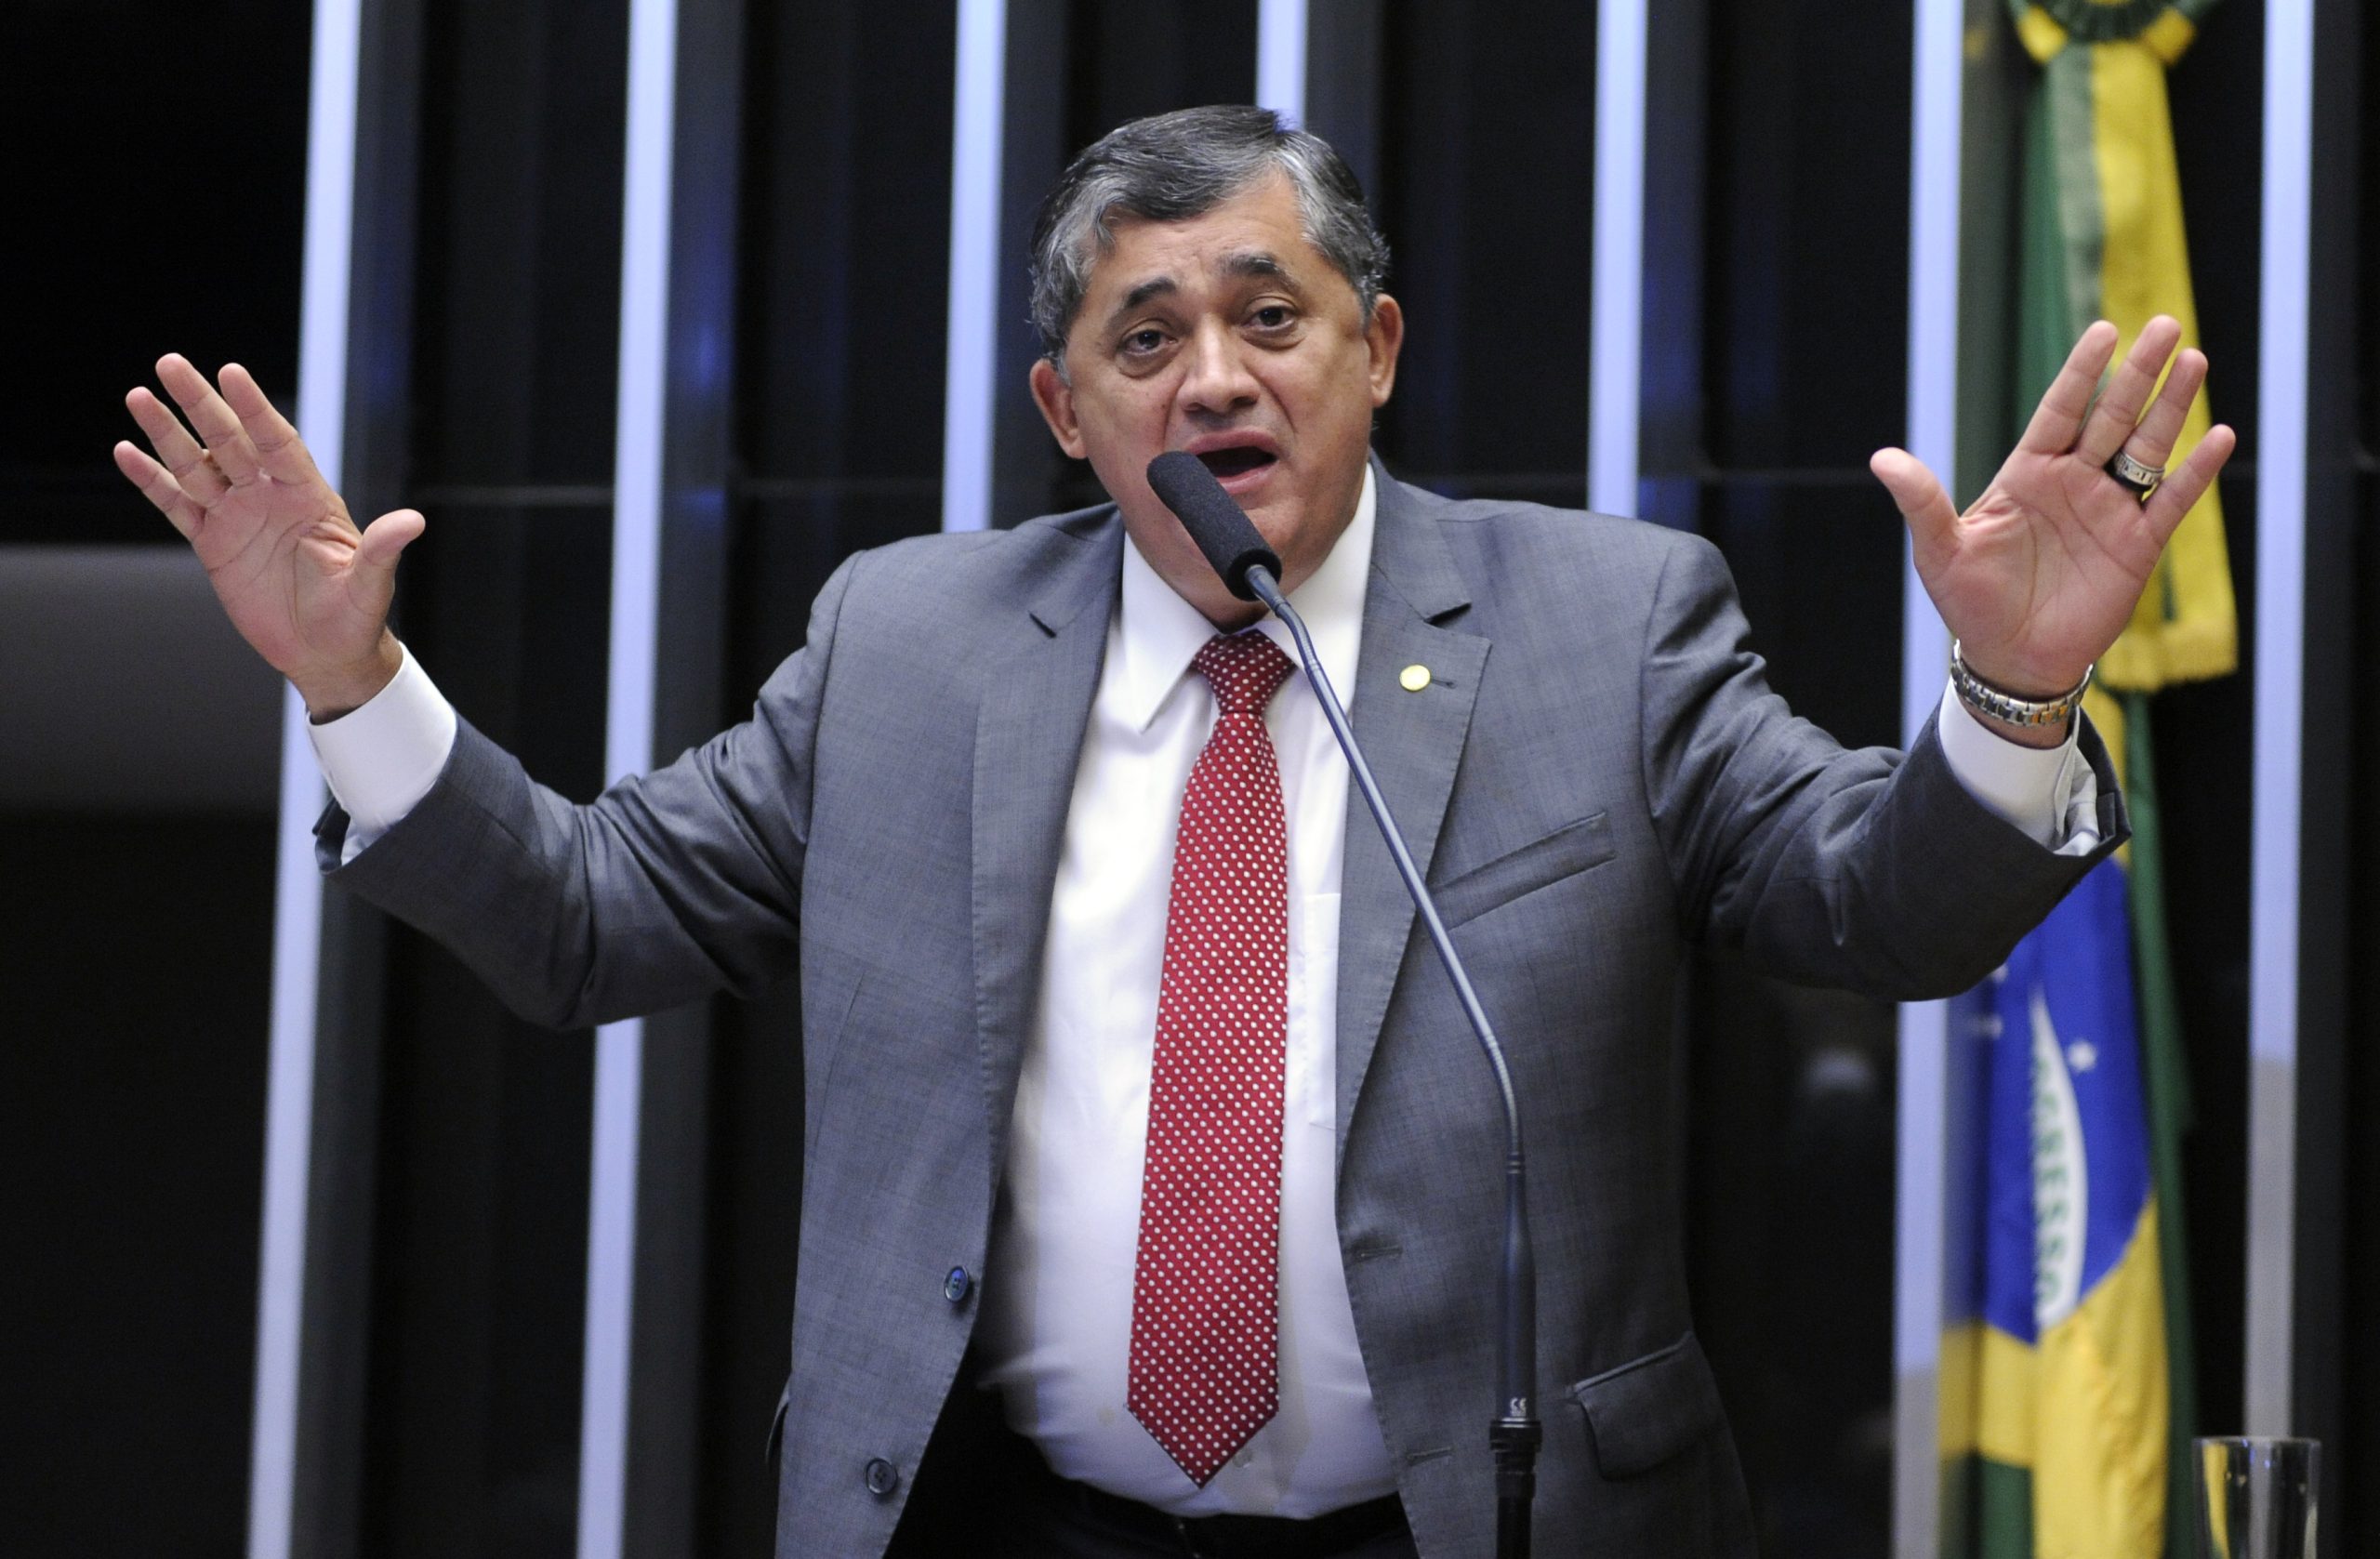 “Vamos ter muita força”, diz José Guimarães ao defender candidatura do PT à Prefeitura de Fortaleza